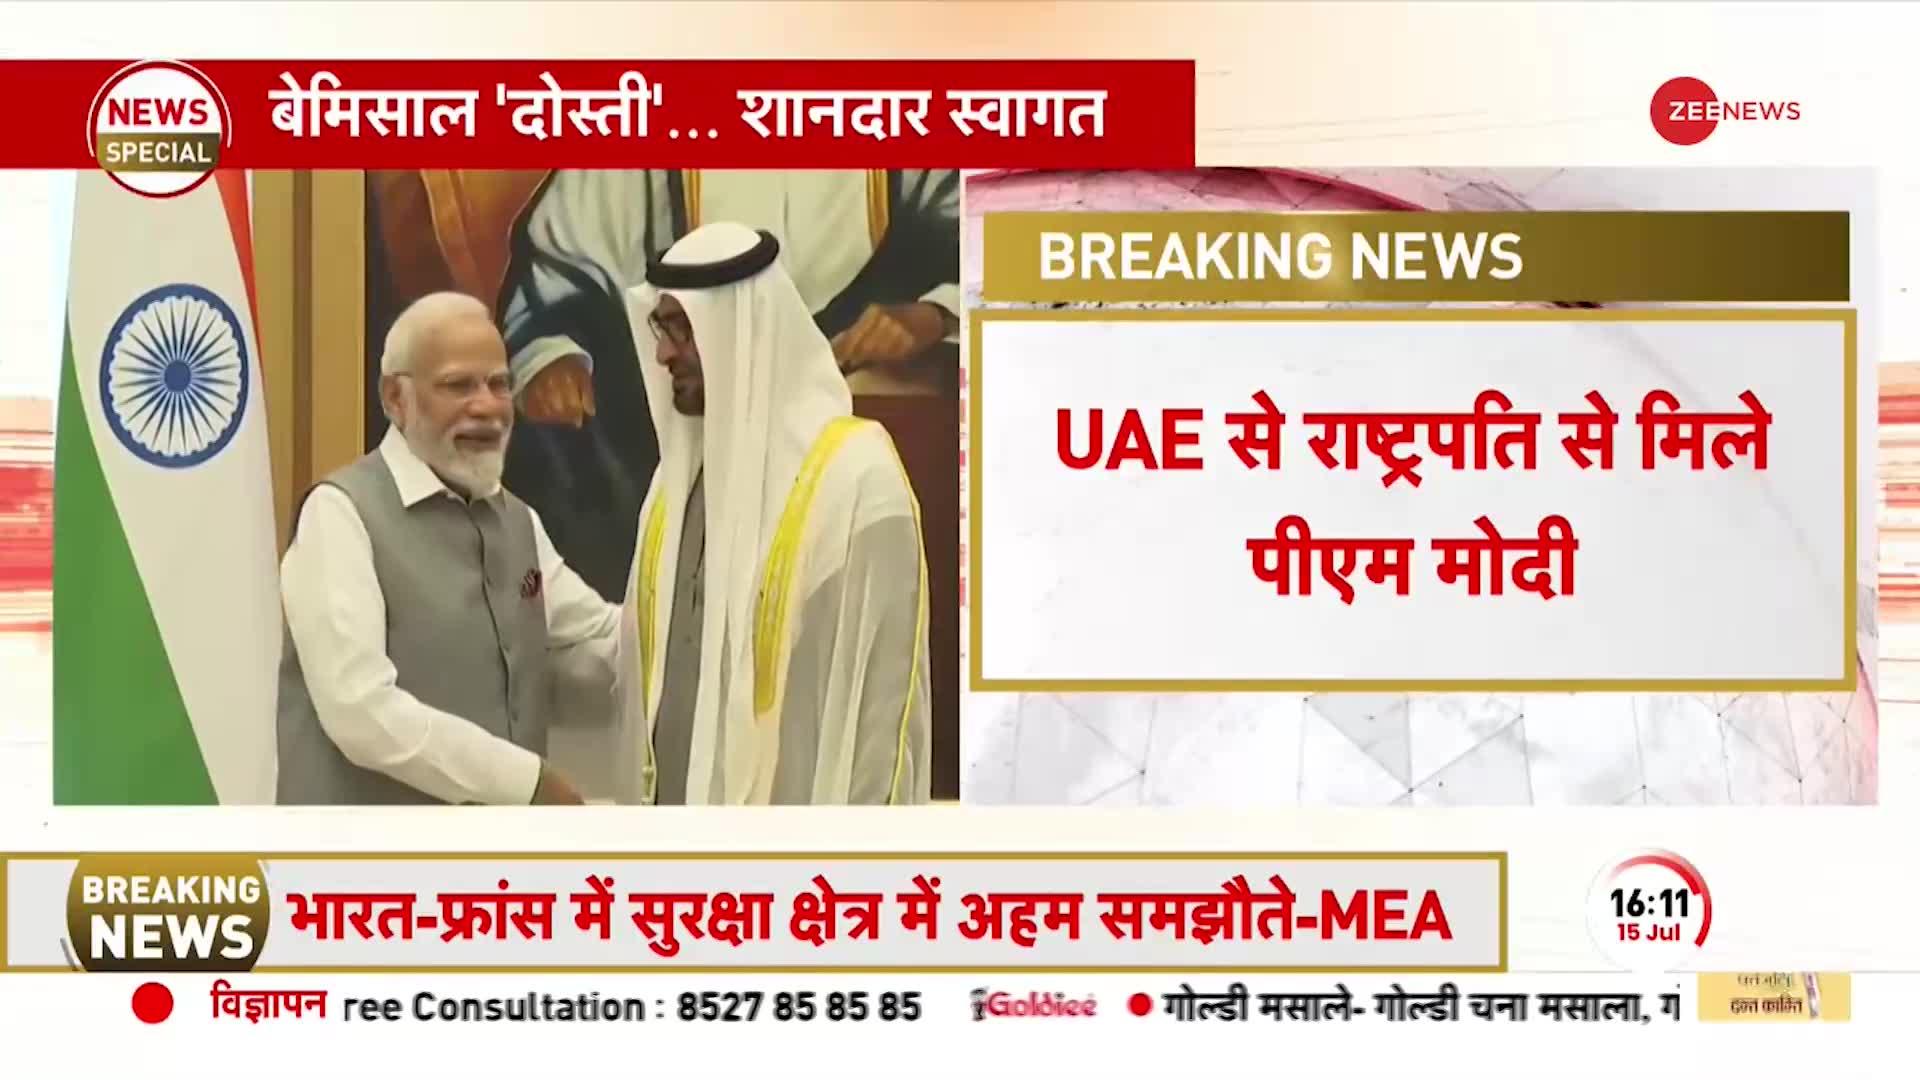 PM Modi UAE Visit: फ्रांस के बाद UAE में मोदी की जय जयकार, सदमे में पाक।  President Sheikh Mohamed